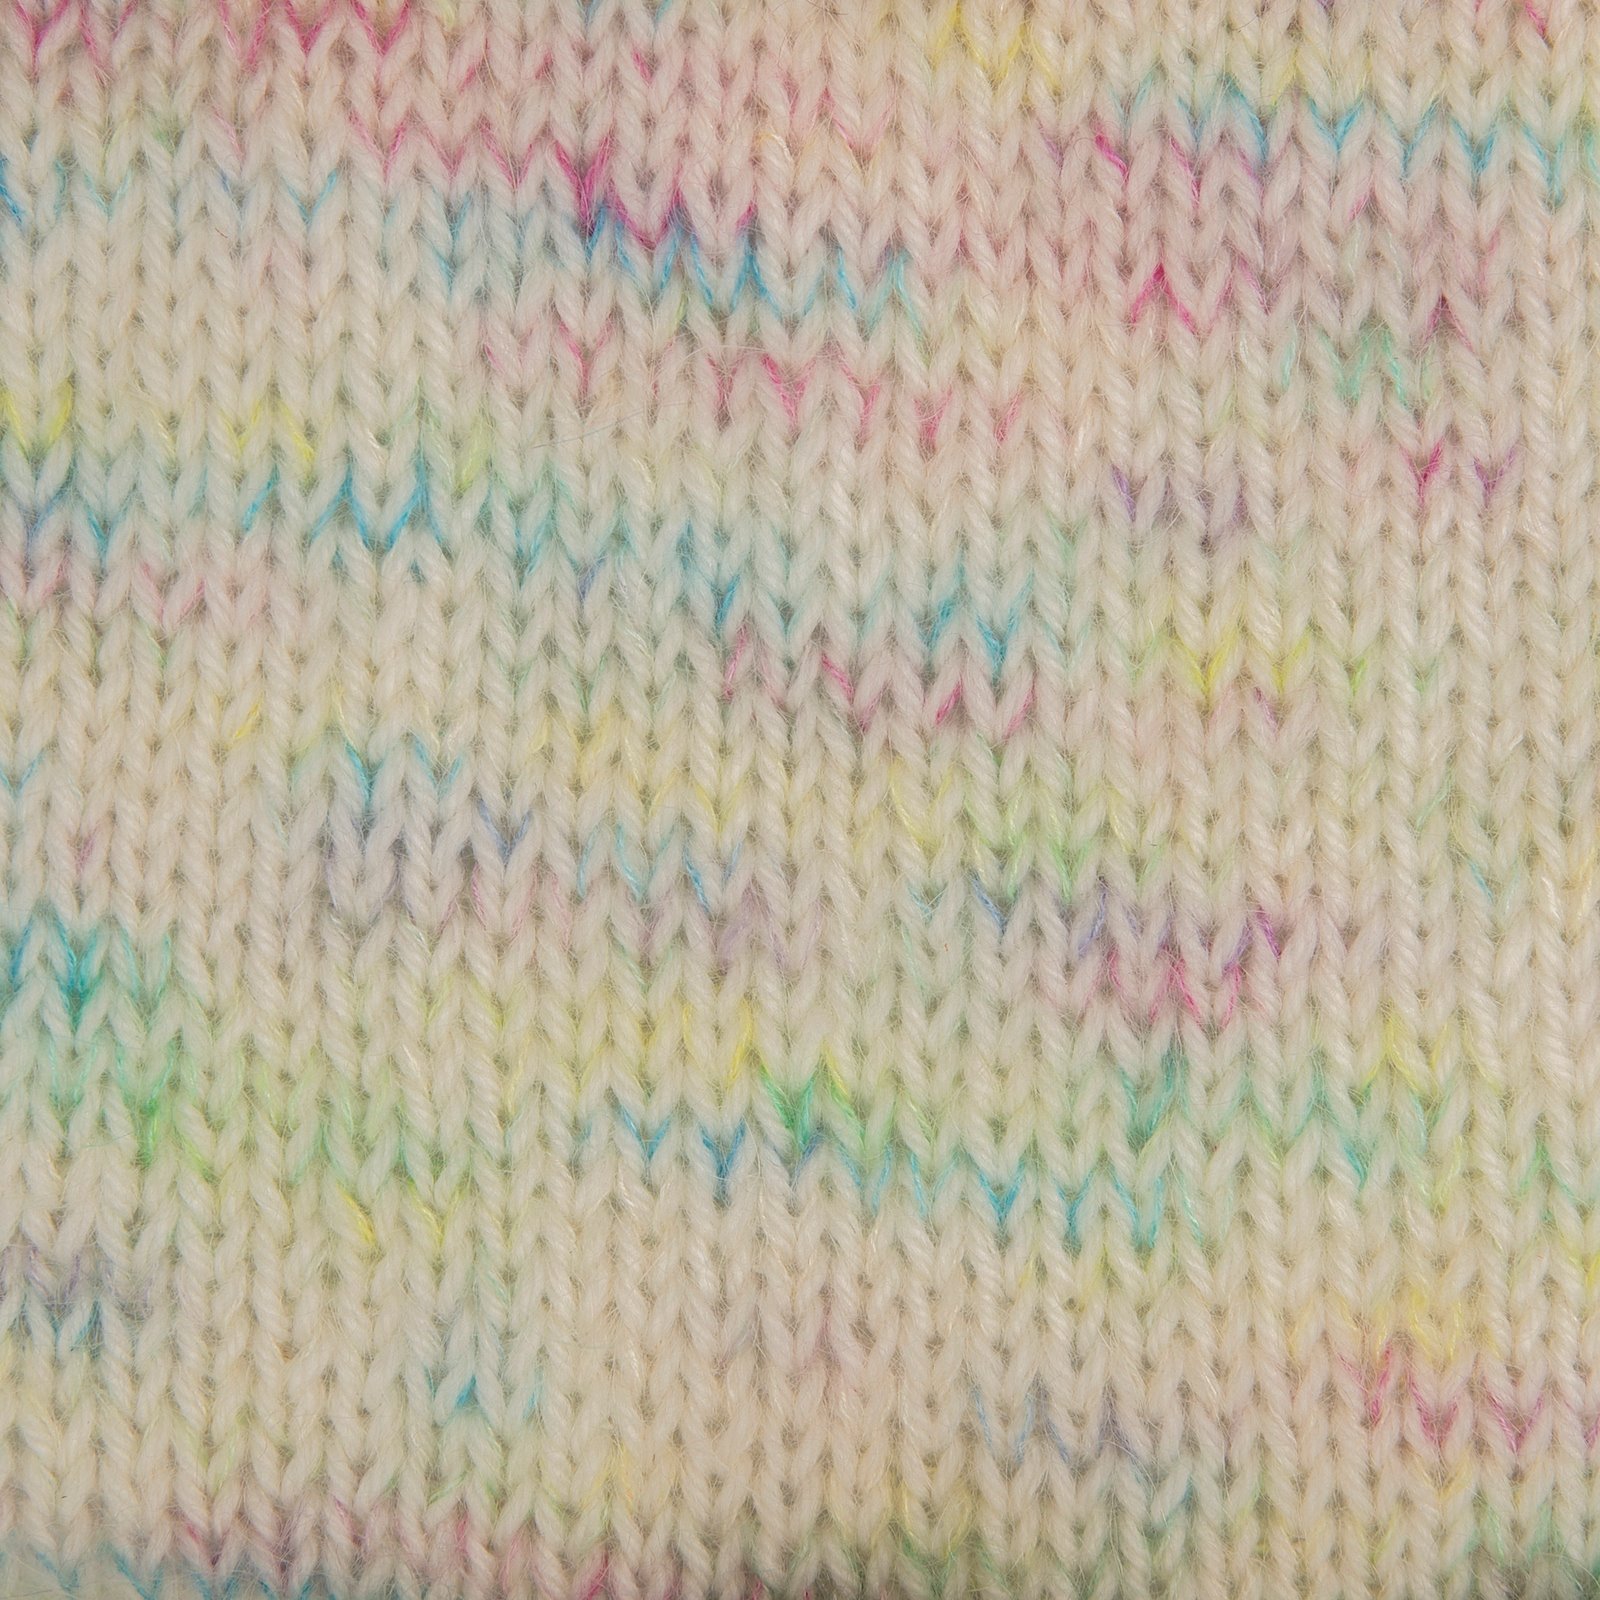 FRAYA, silk mohair yarn "Friendly", candy floss mix 90000103_sskit